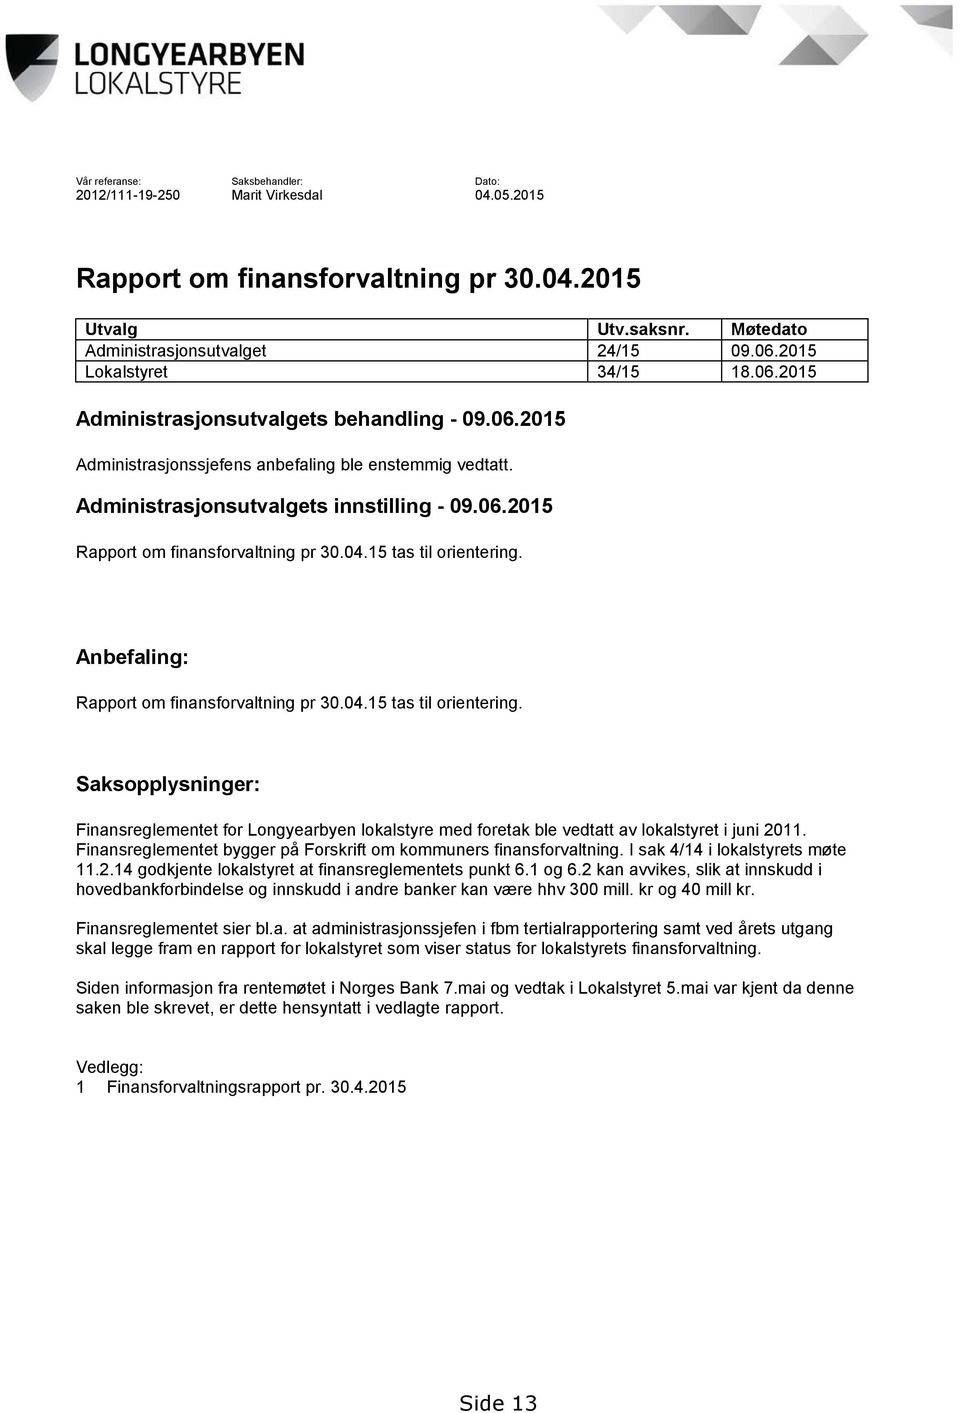 04.15 tas til orientering. Anbefaling: Rapport om finansforvaltning pr 30.04.15 tas til orientering. Saksopplysninger: Finansreglementet for Longyearbyen lokalstyre med foretak ble vedtatt av lokalstyret i juni 2011.